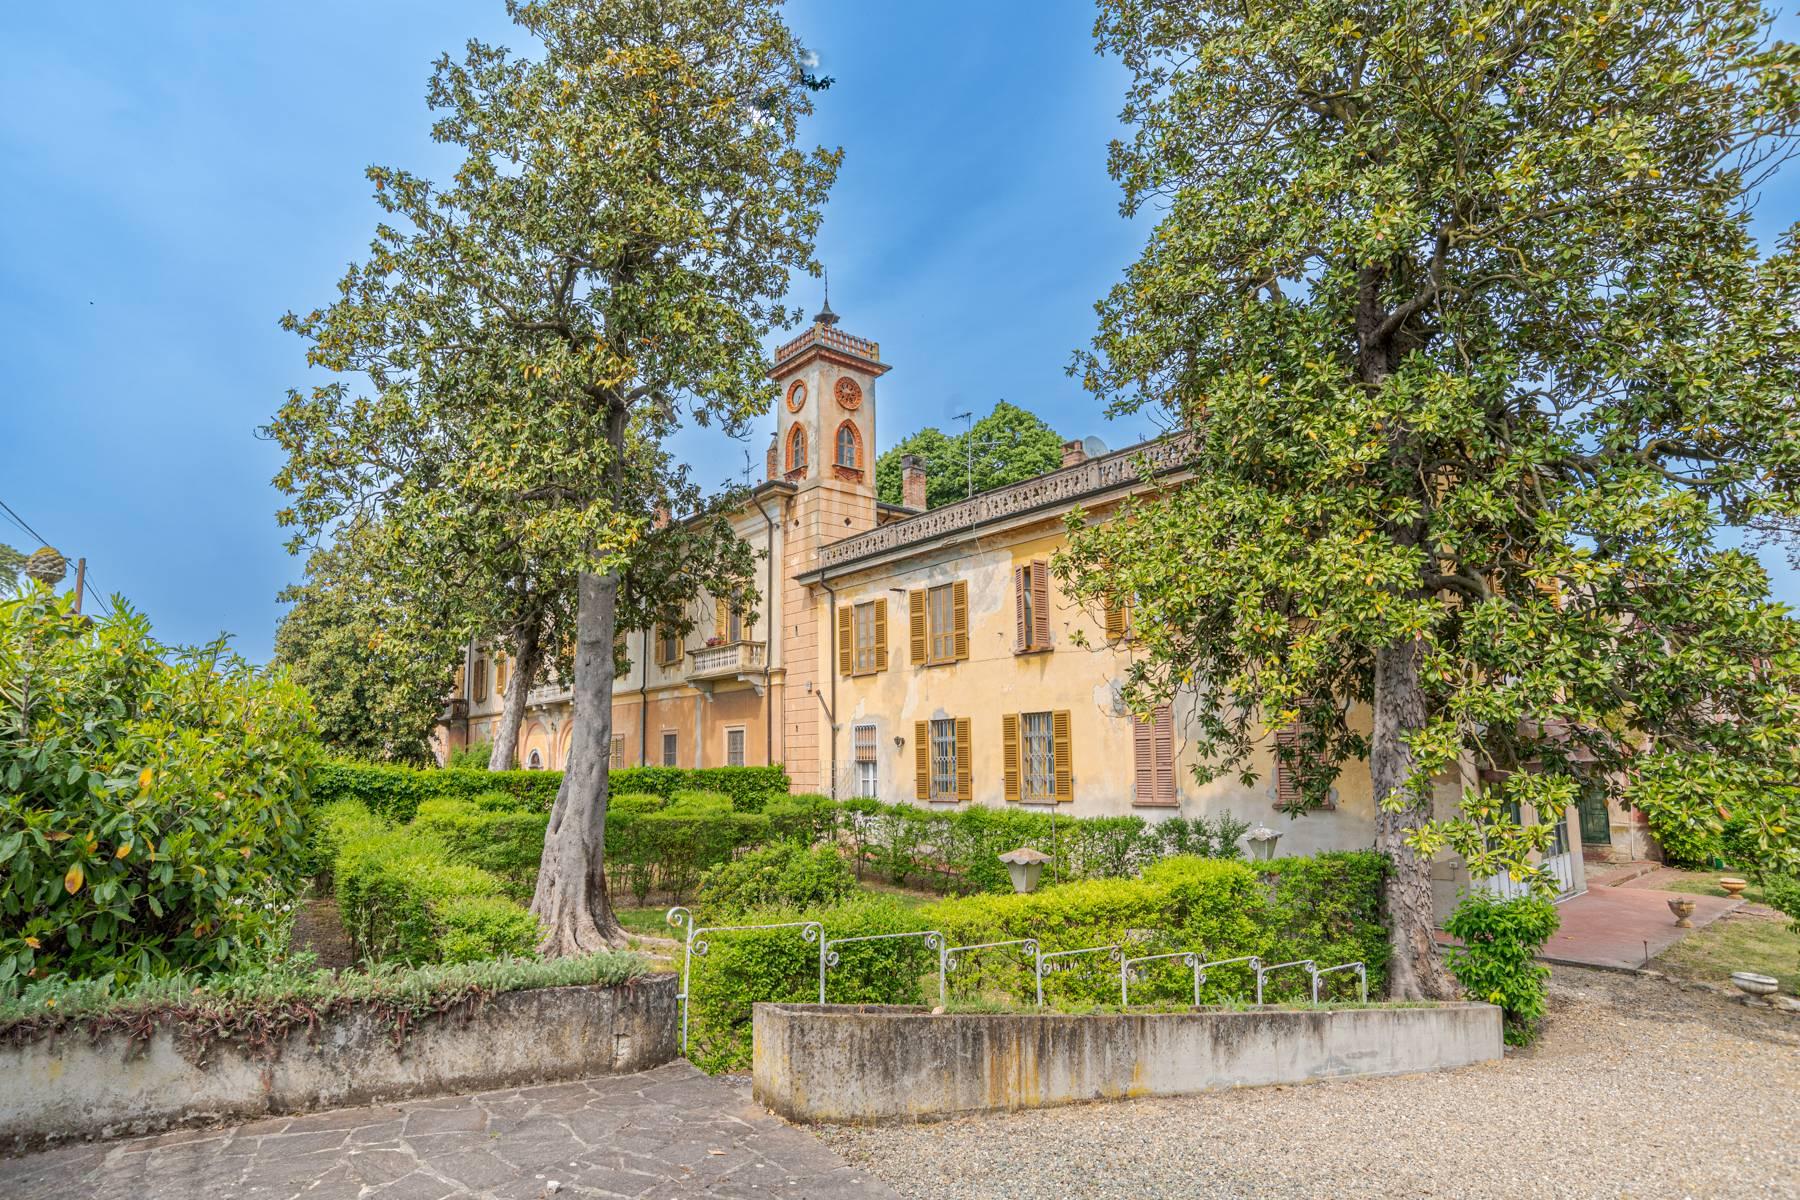 Cascina Bella - 18th century villa with park in Oltrepo' Pavese - 1